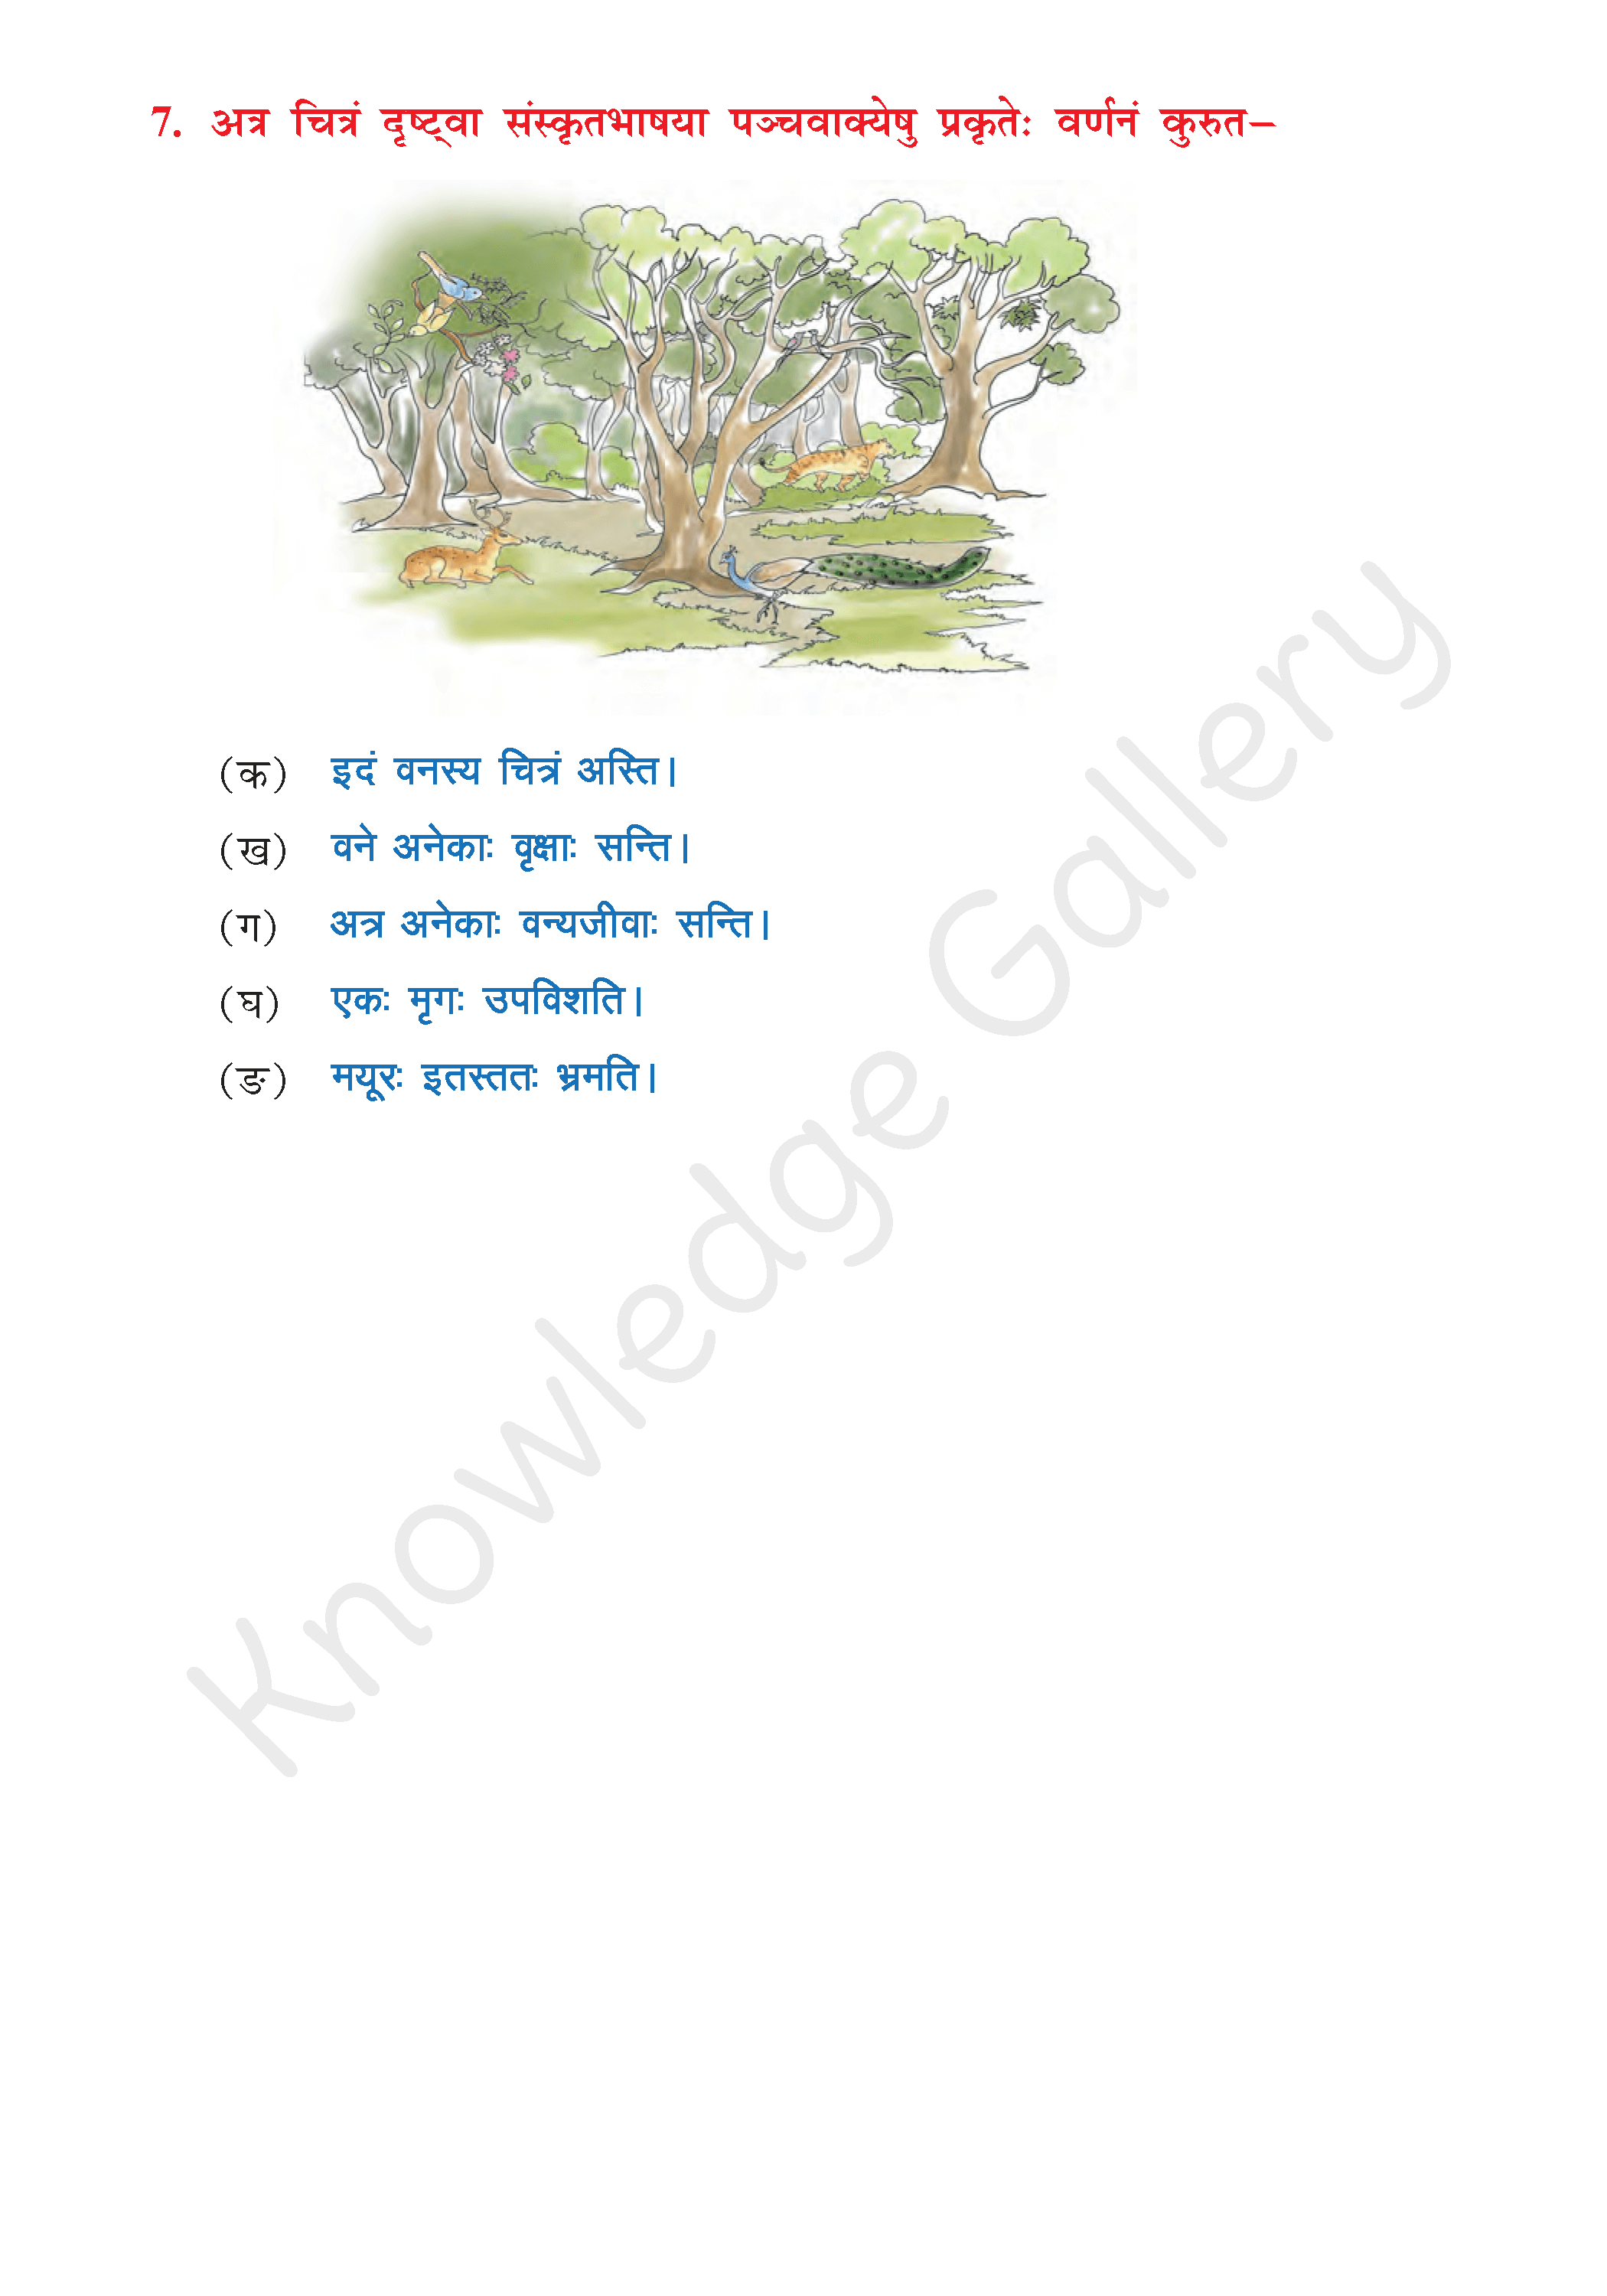 NCERT Solution For Class 8 Sanskrit Chapter 13 part 7